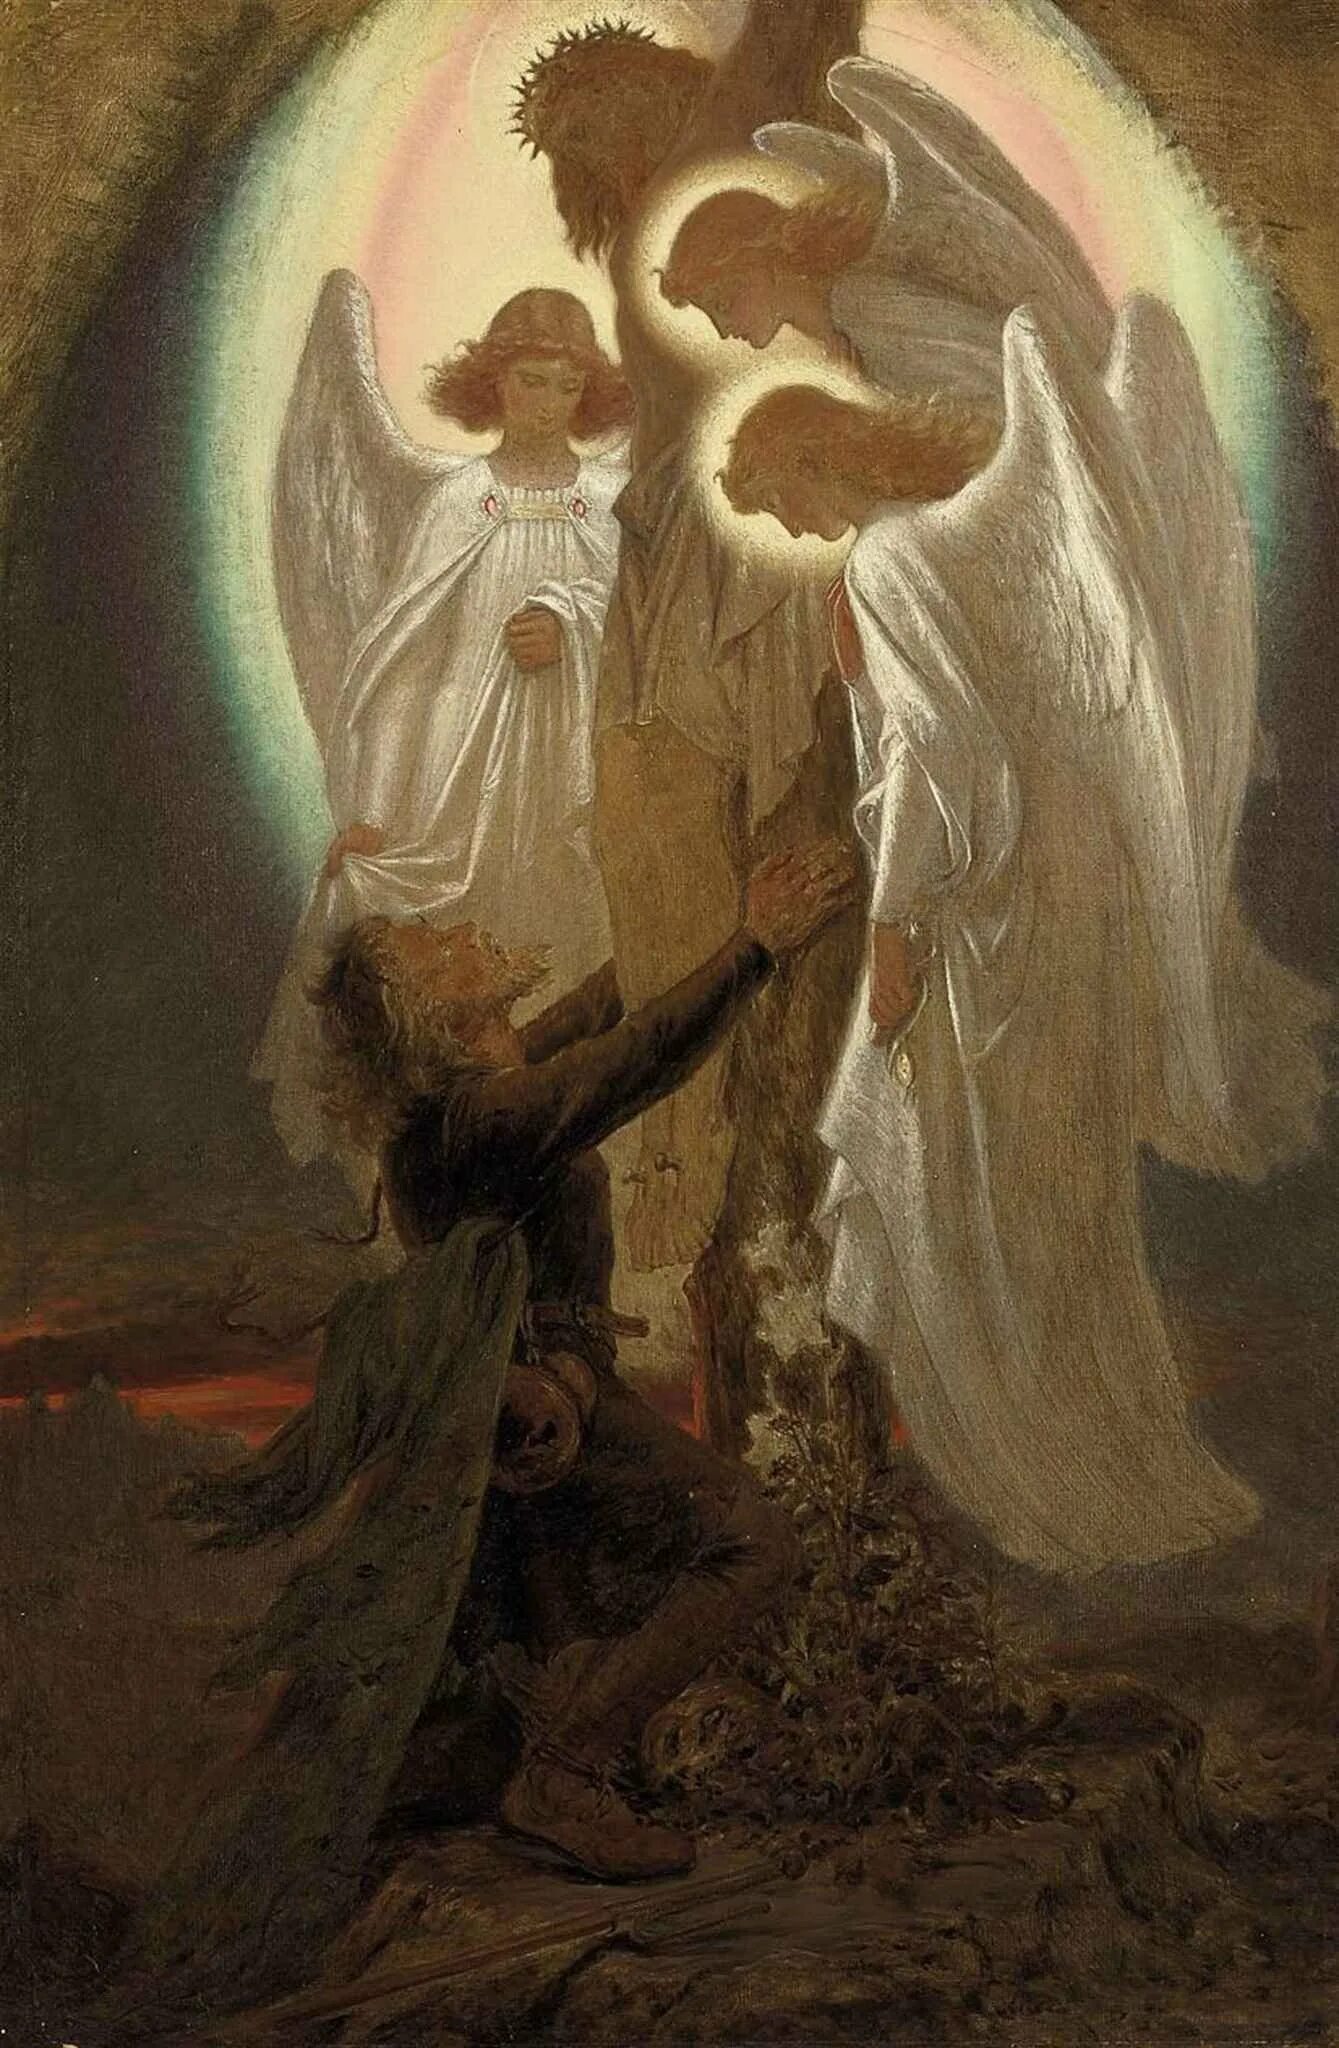 Ангелы святого человека